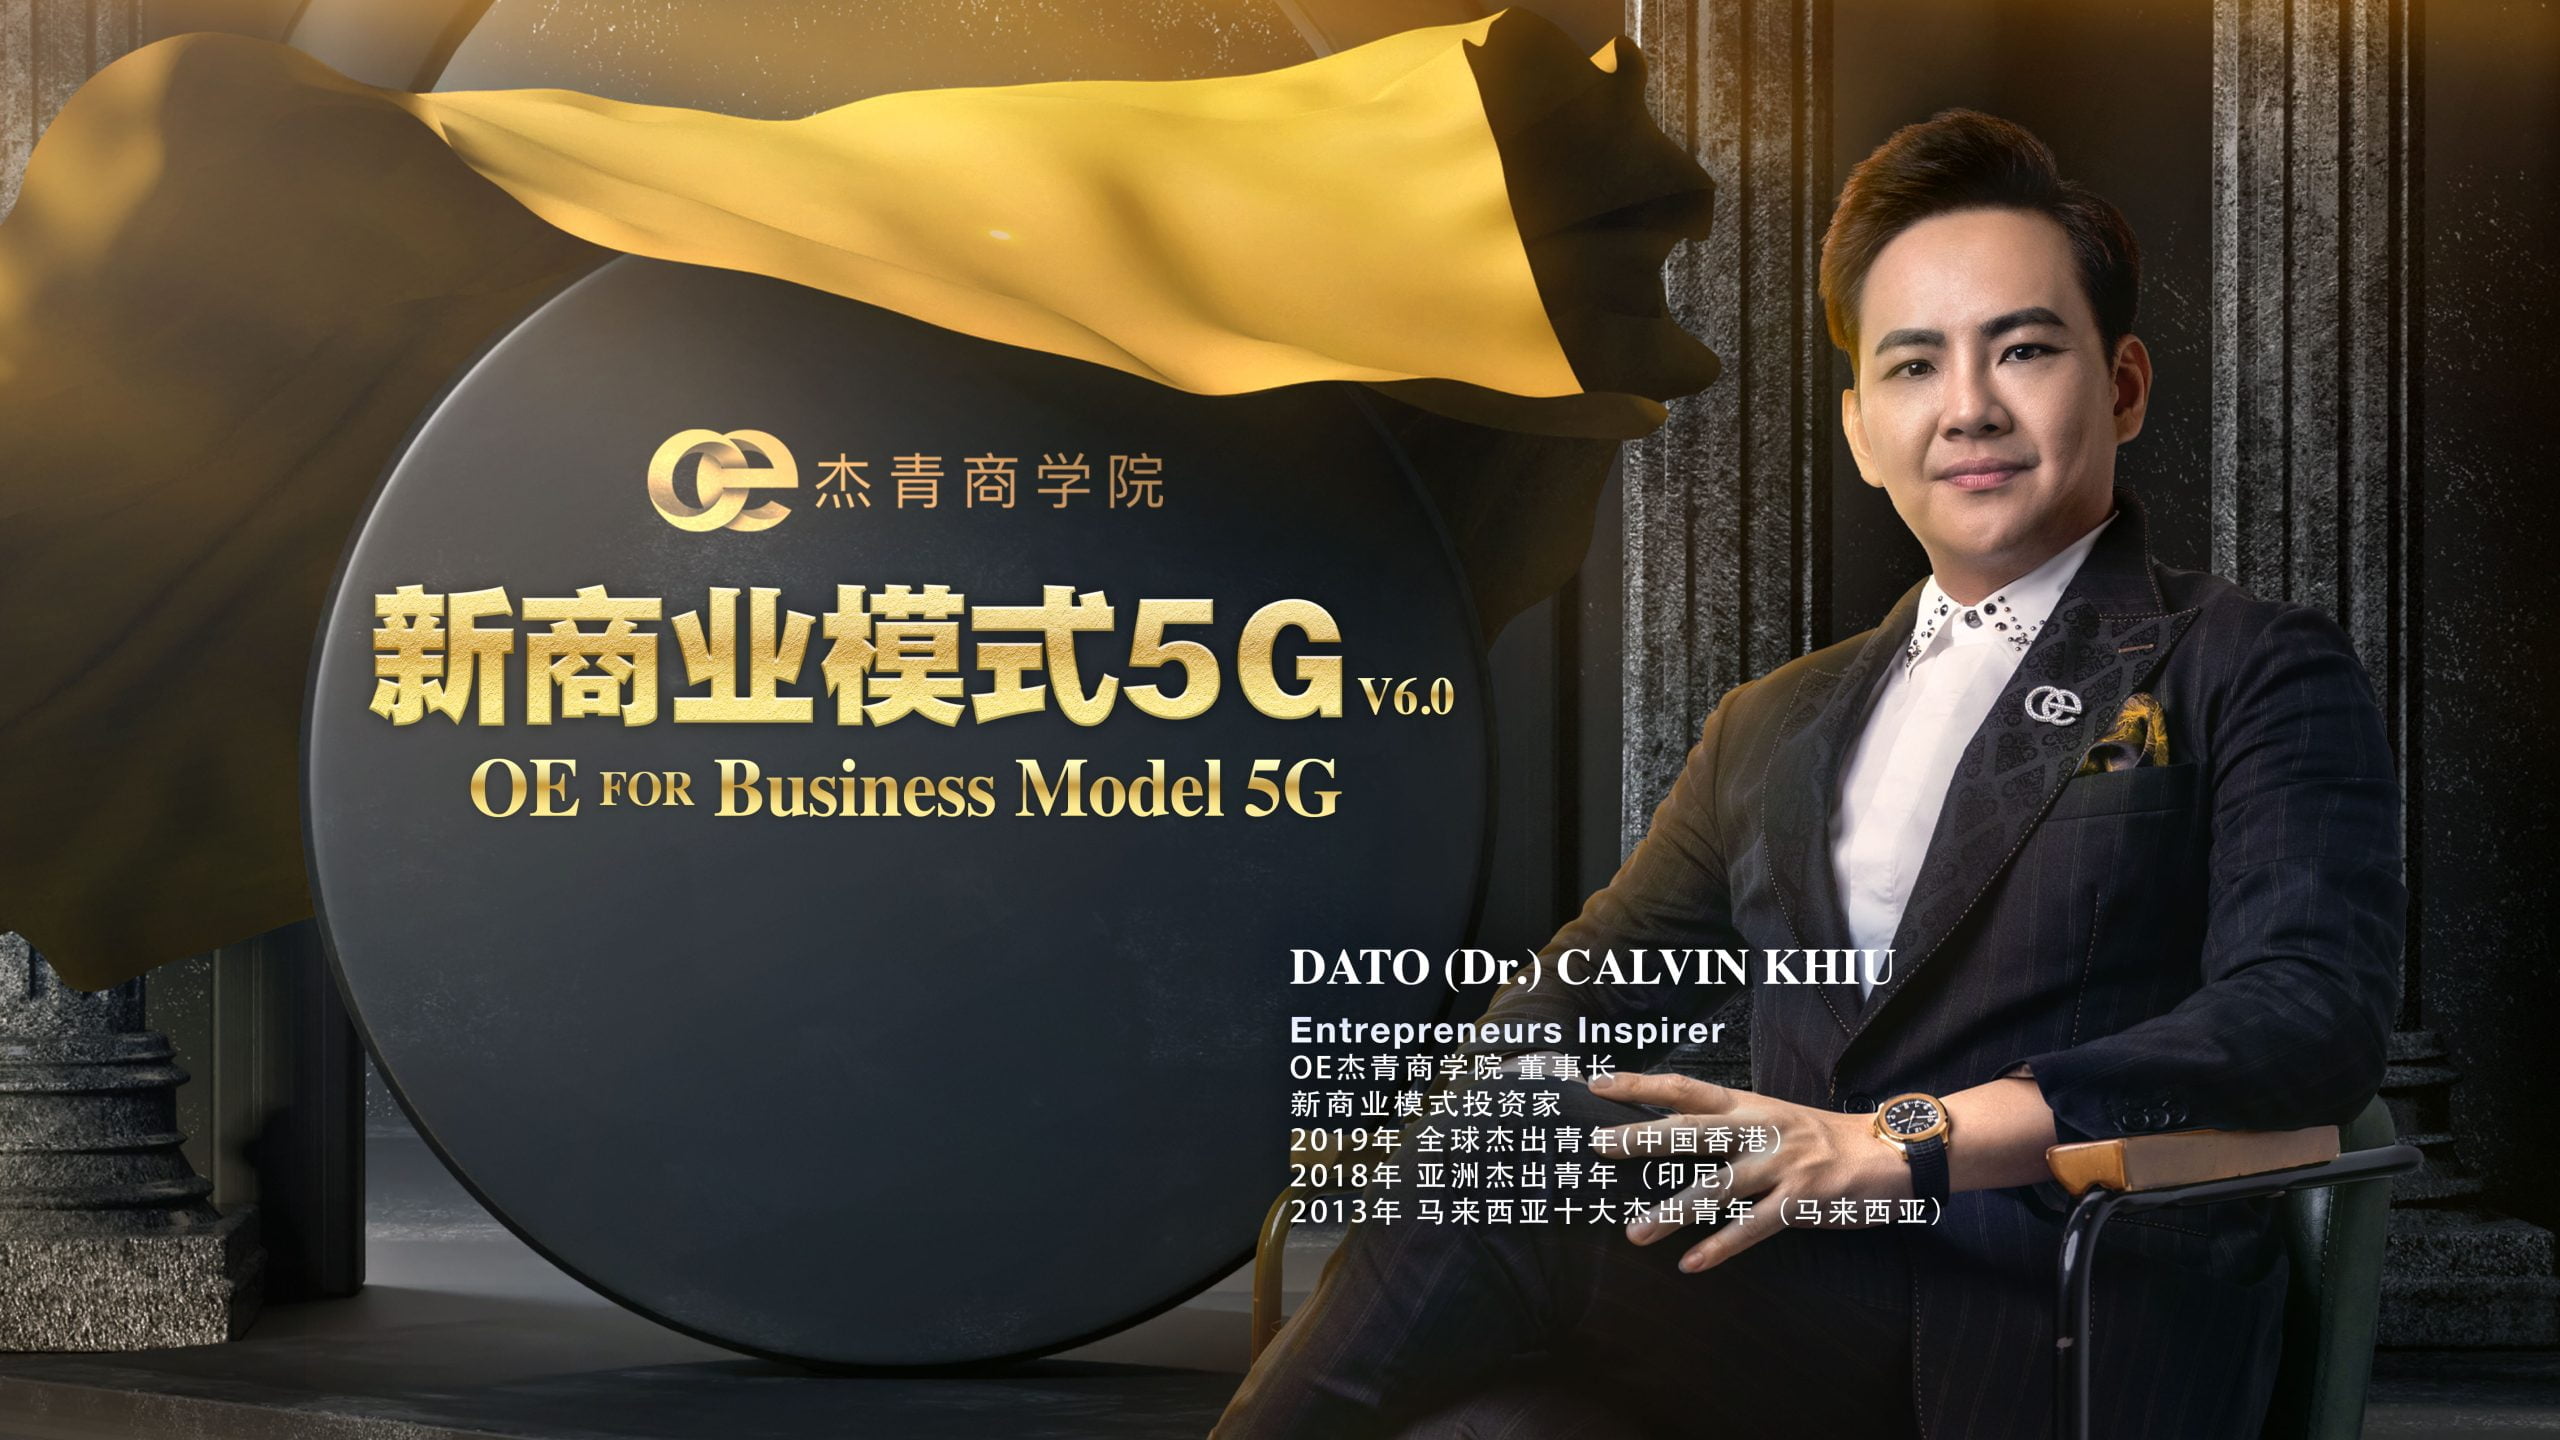 穿着西装的 Calvin Khiu 博士站在OE新商业模式5G标牌前